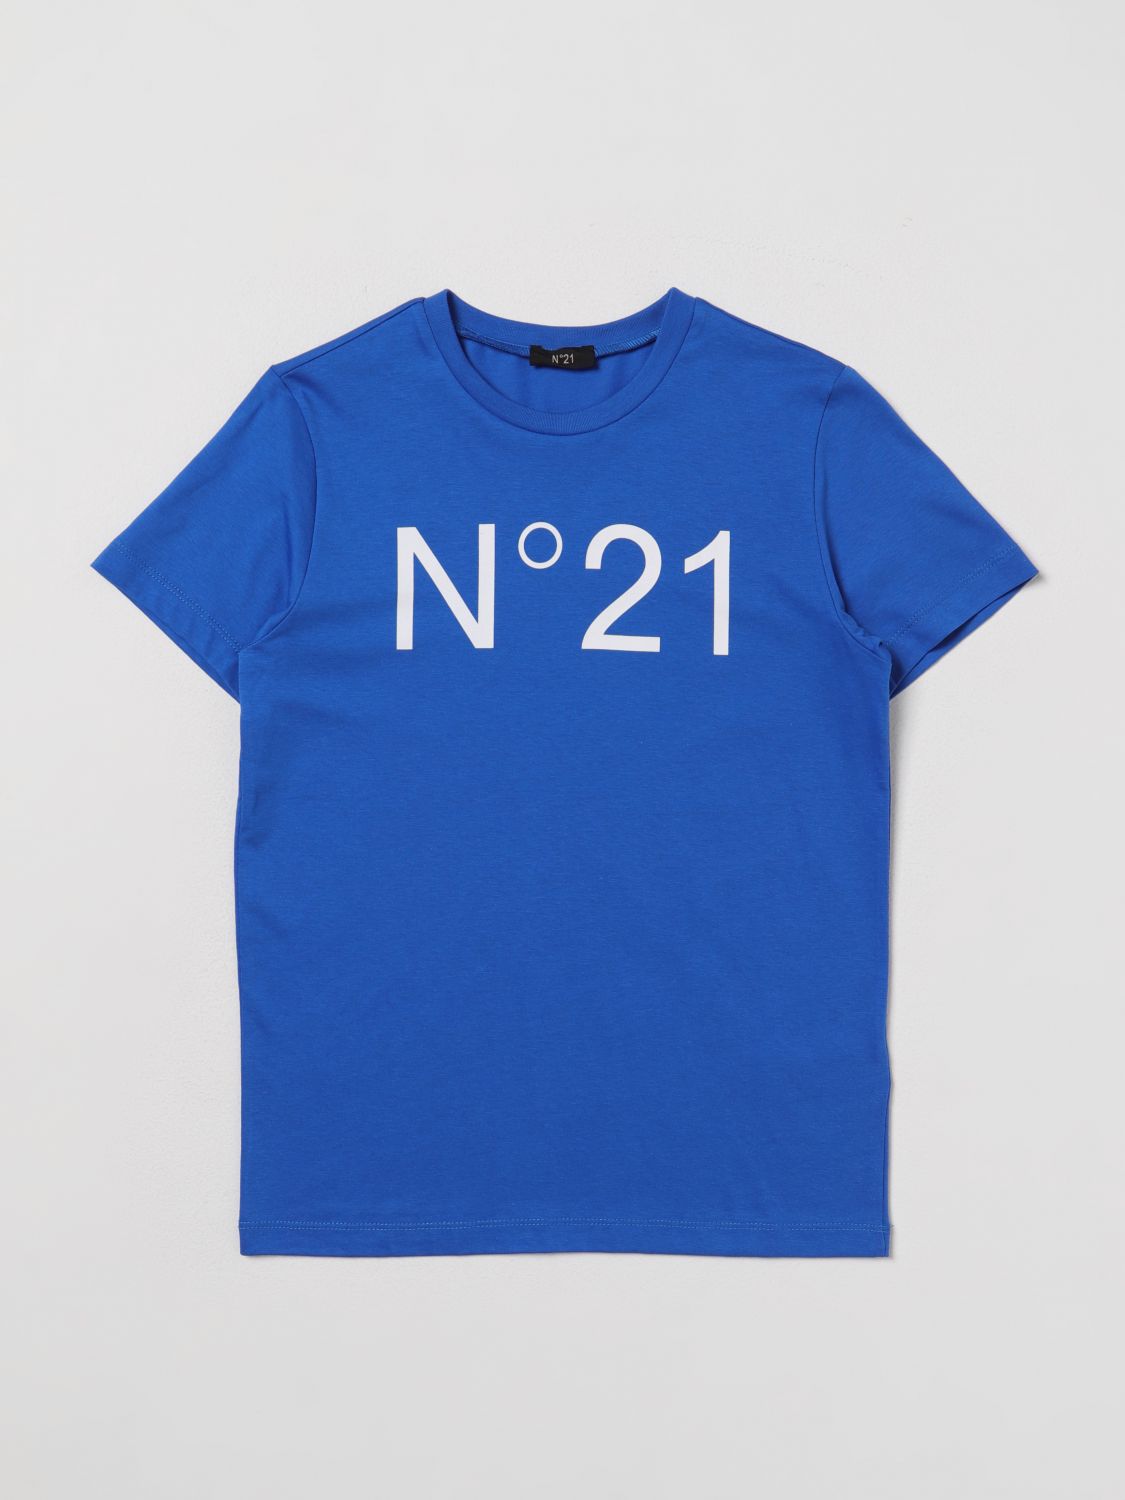 N° 21 T-Shirt N° 21 Kids colour Royal Blue